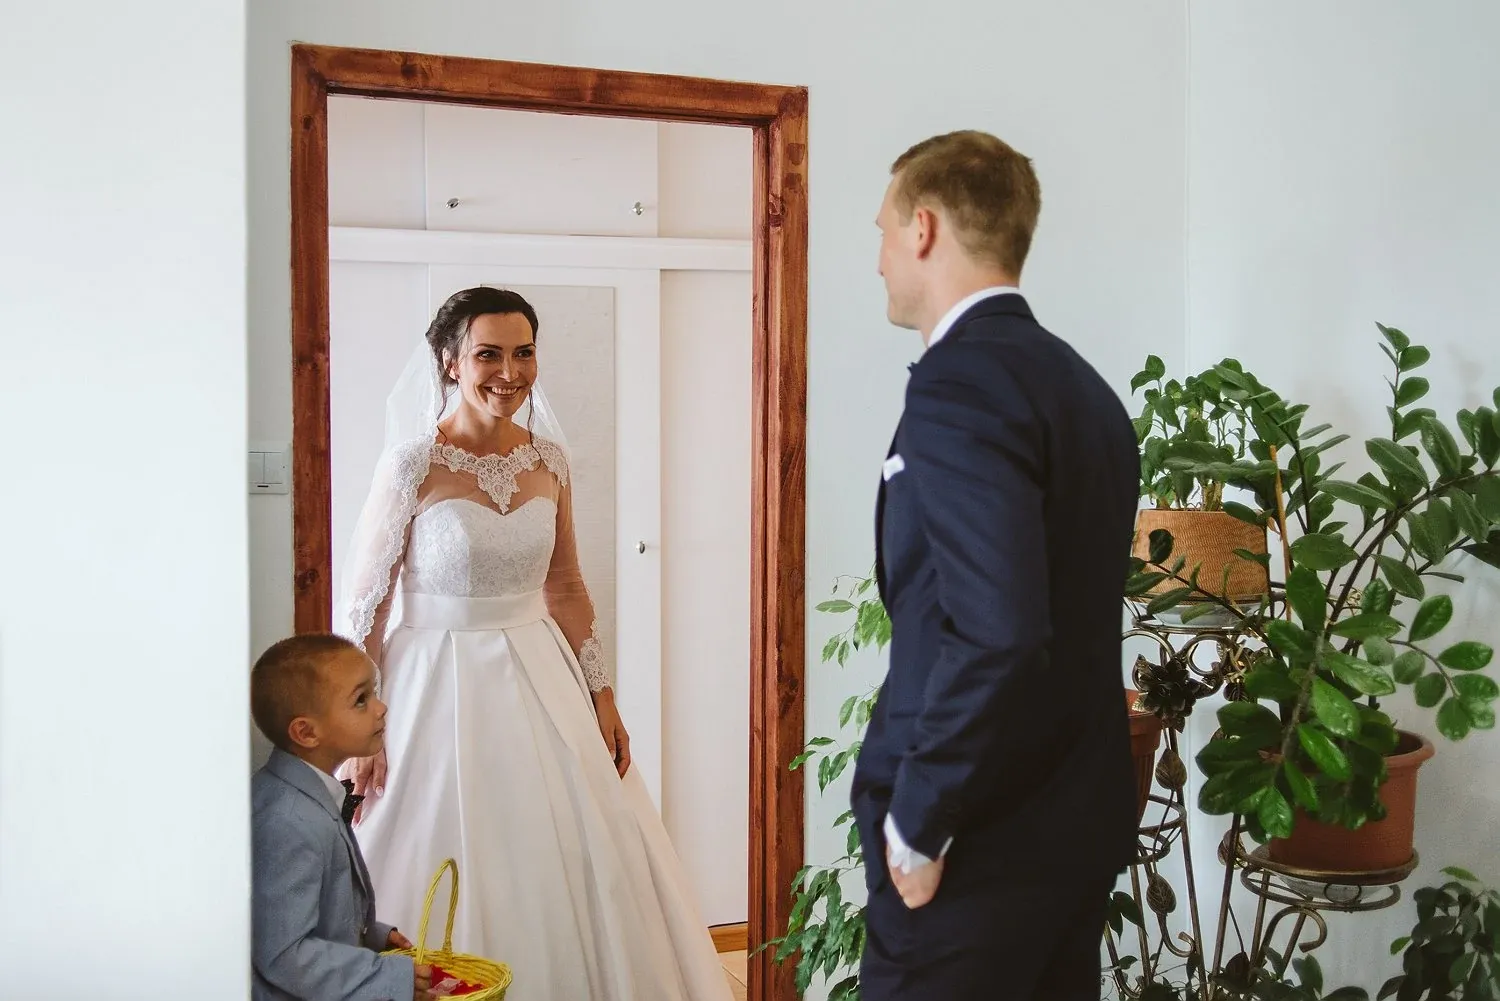 grazynajacek_wedding_9.webp - Grażyna & Jacek- Monika Chmielewska - wedding, portaits, family photography - Munich